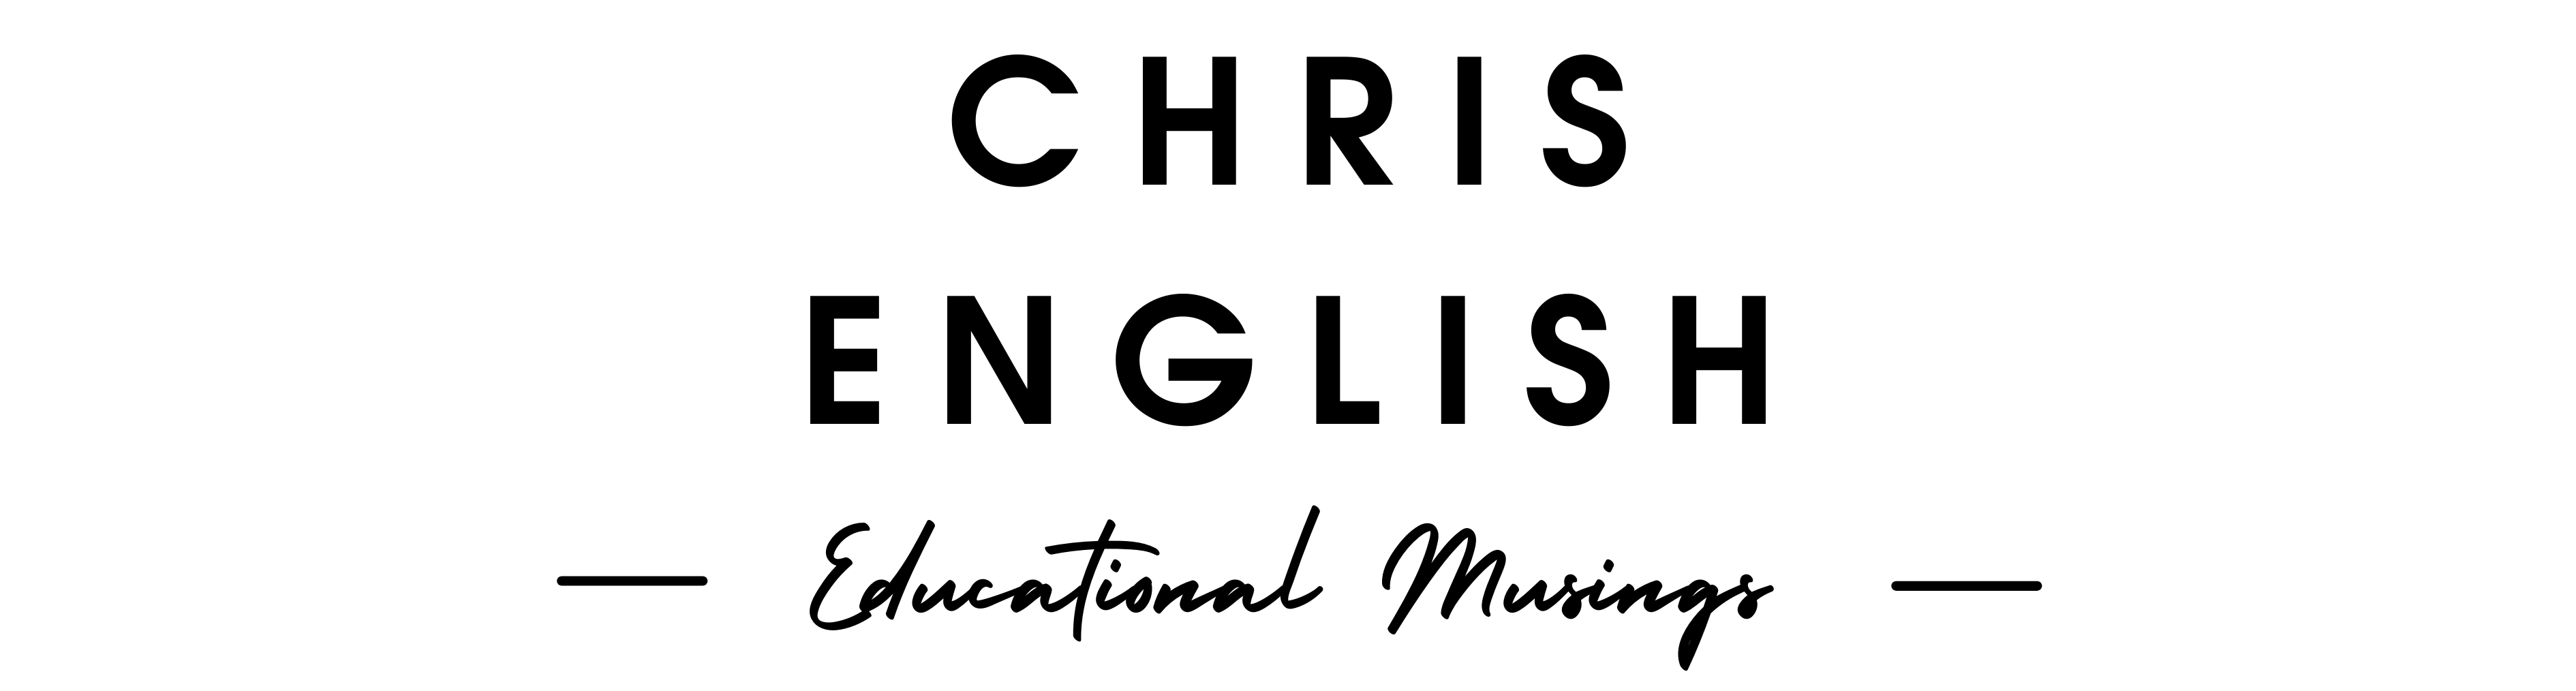 Chris English